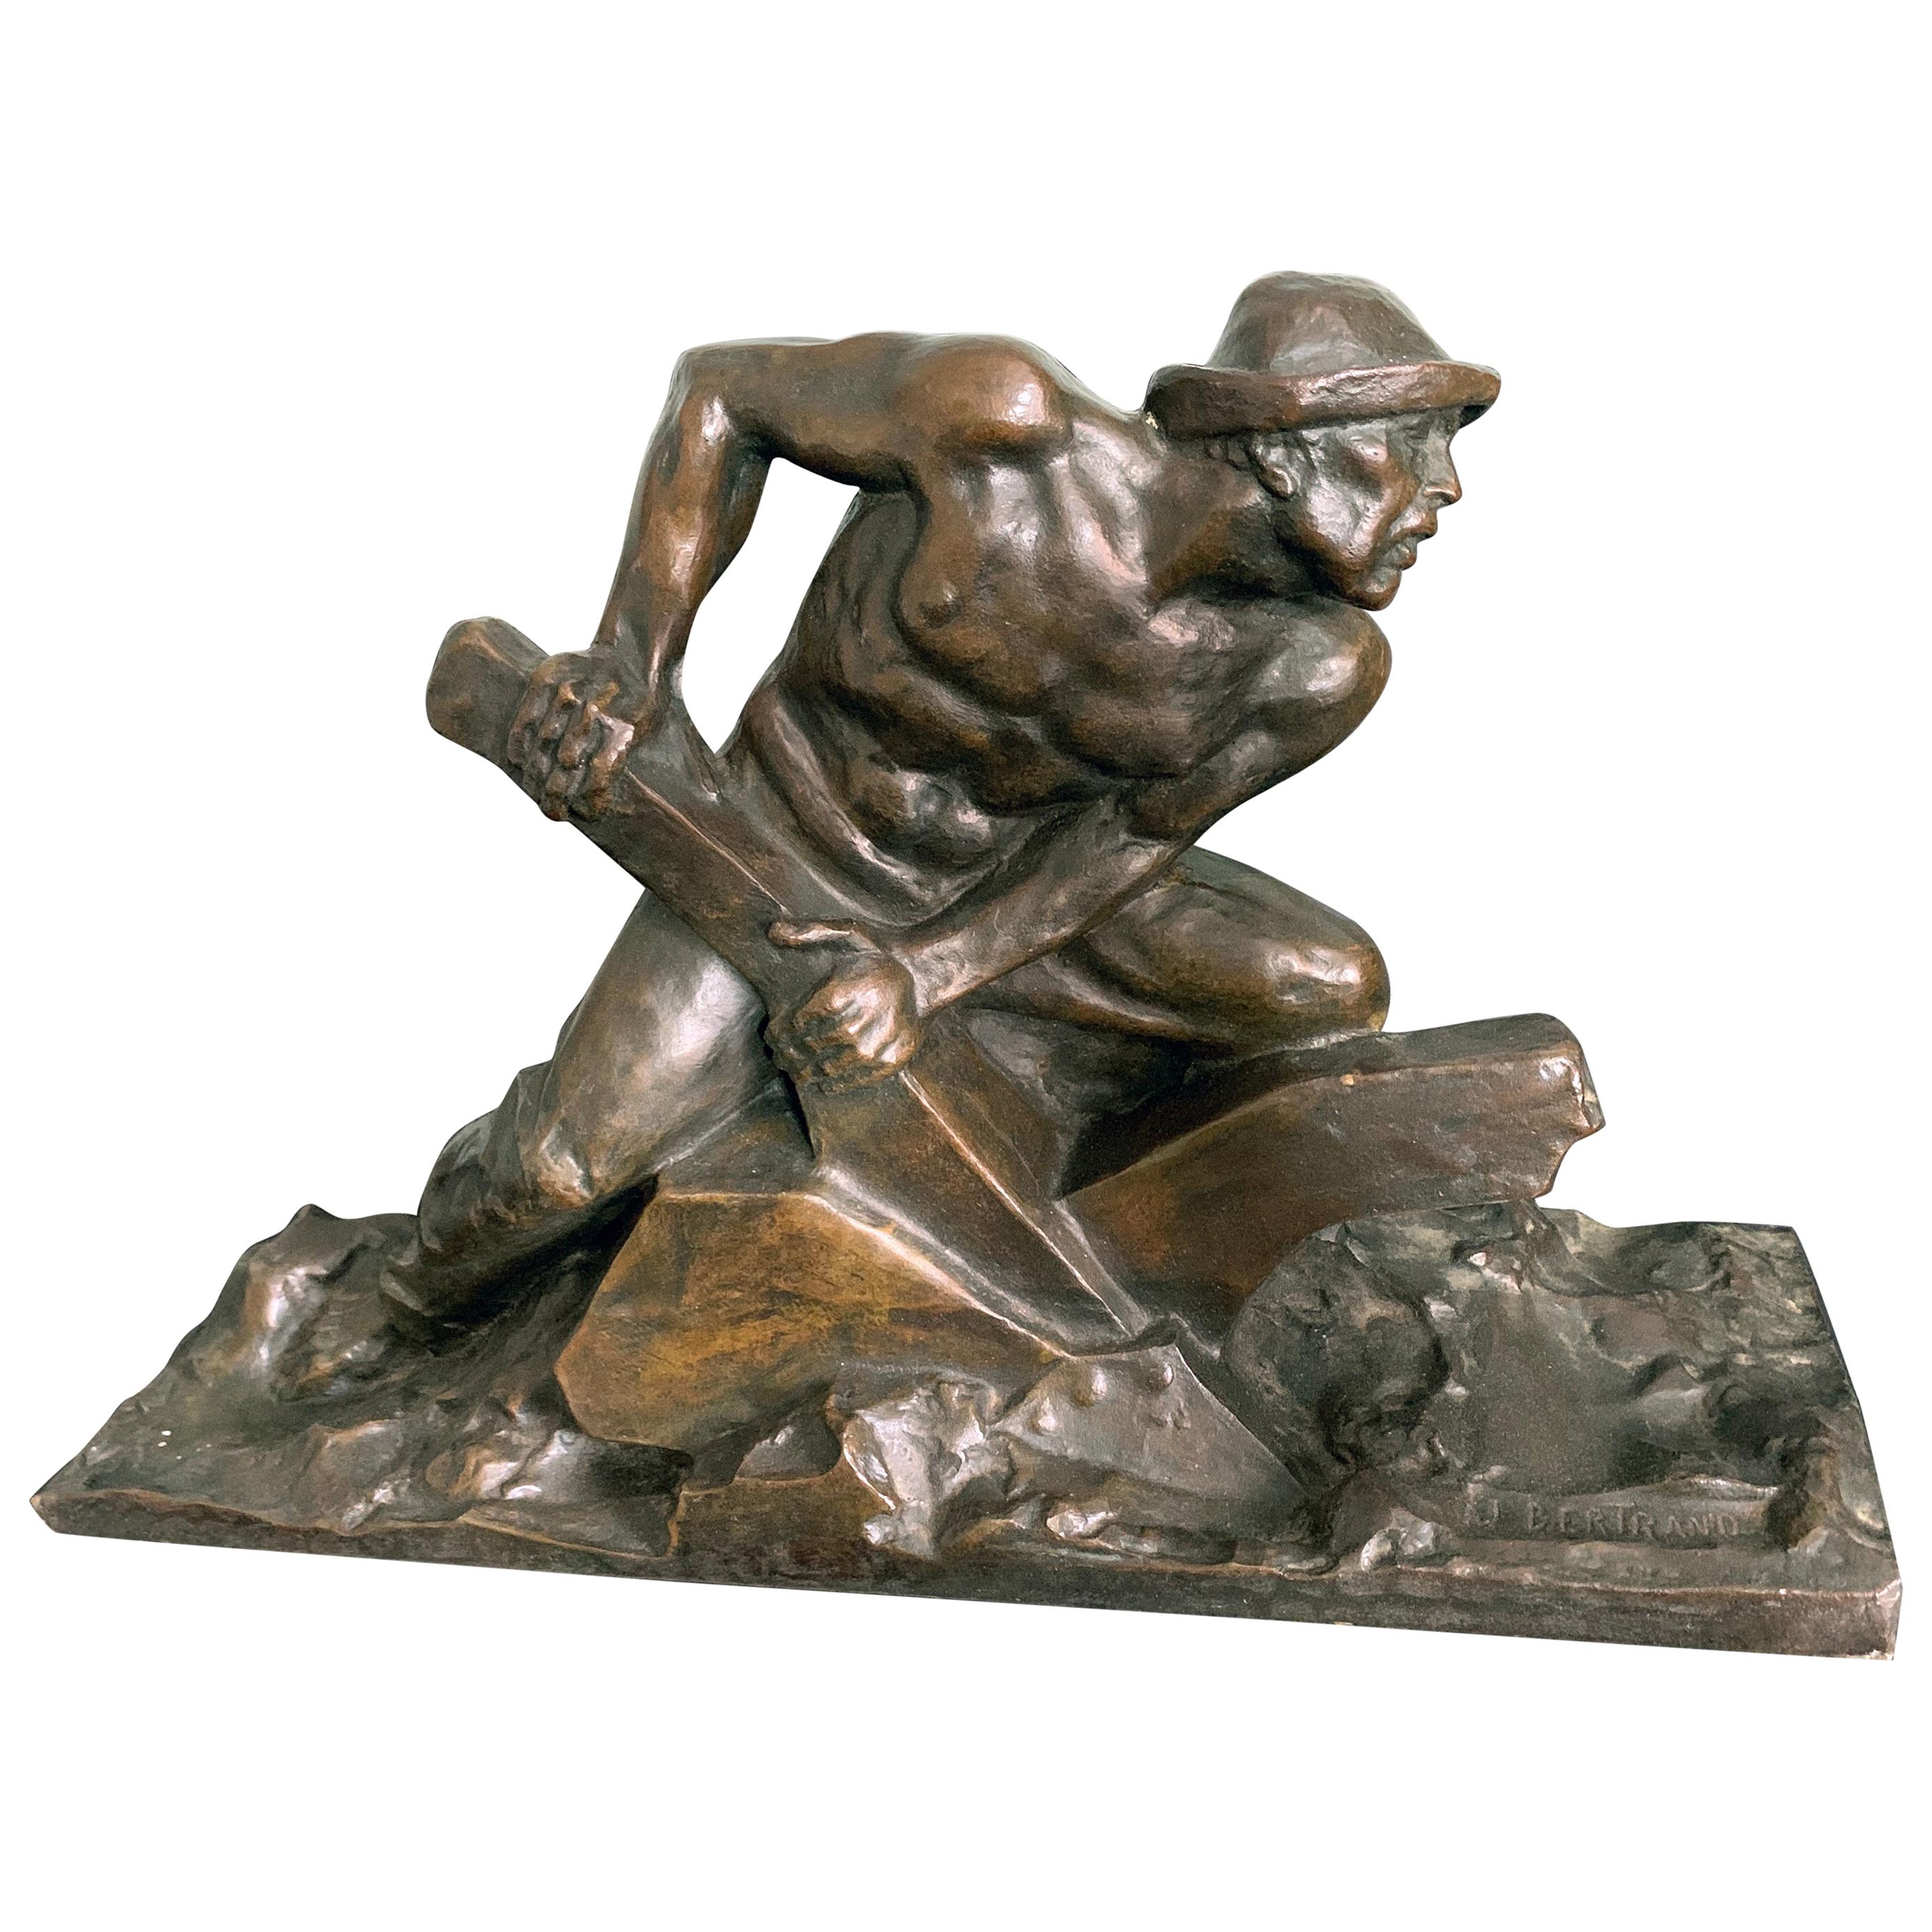 "Driving the Plow", grande et puissante sculpture en bronze avec une figure masculine semi-nue